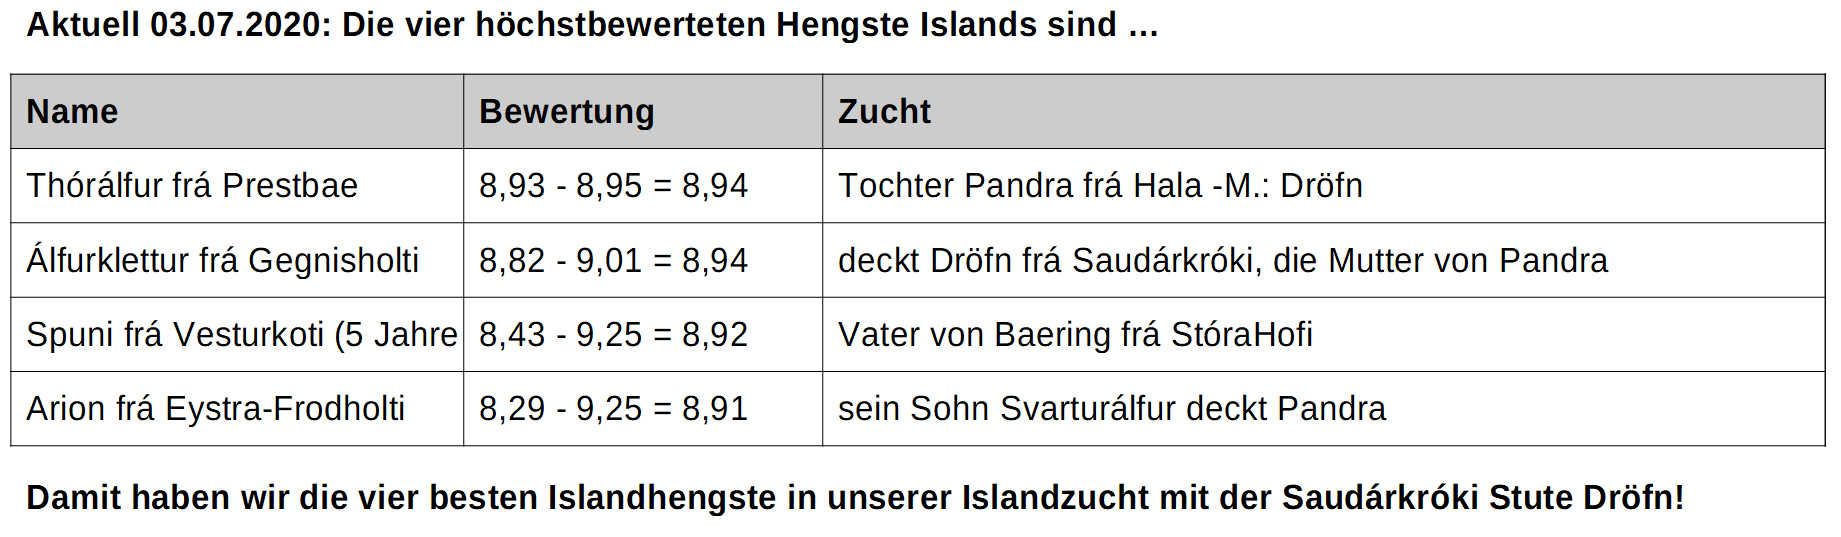 hchstbewertete Island-Hengste